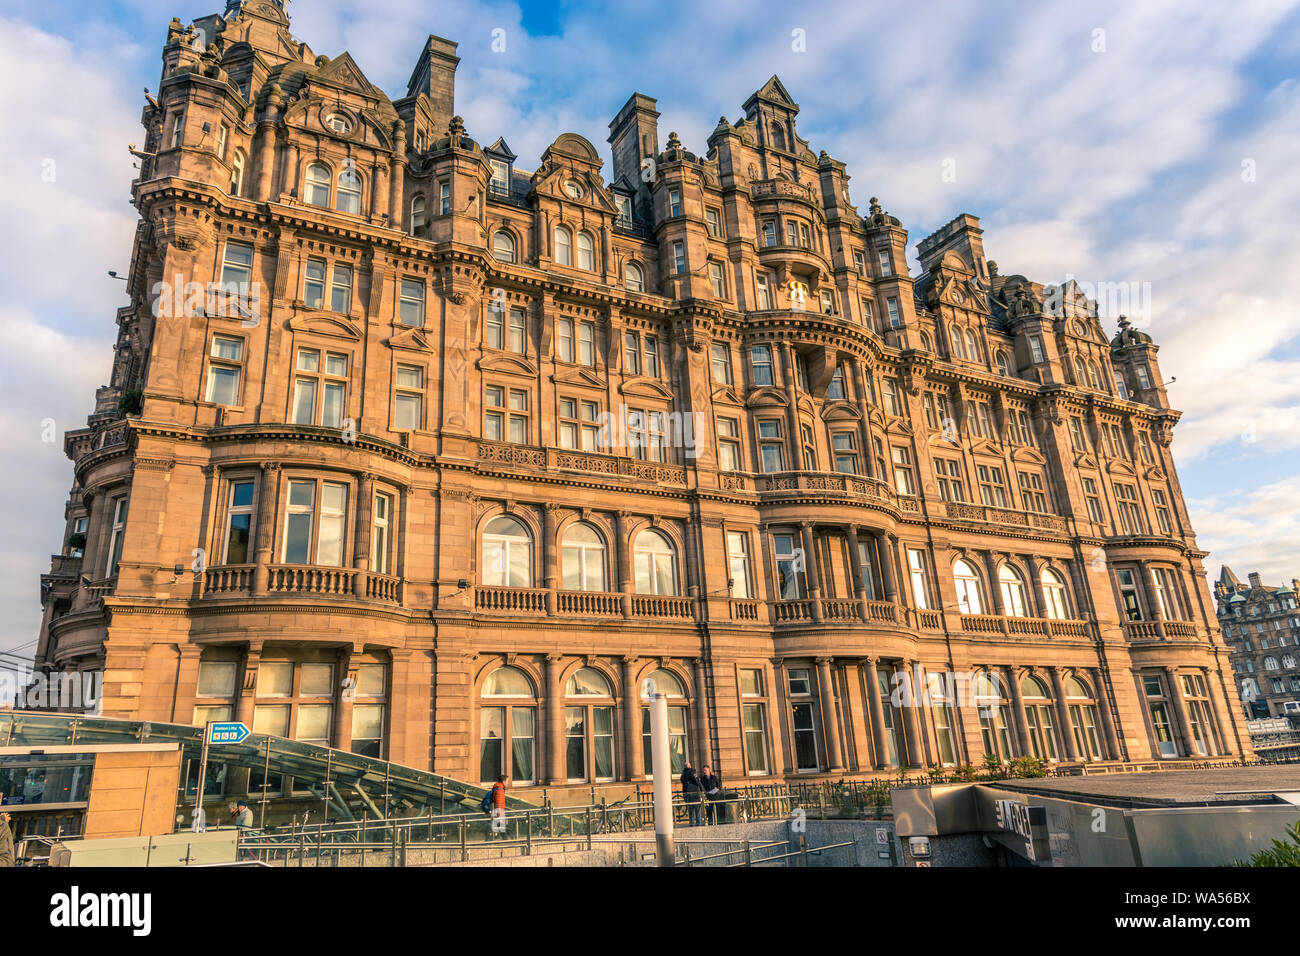 Das Balmoral Hotel ein 5-Sterne Luxushotel im Herzen von Edinburgh, neben dem Eingang zur Waverley Station, Schottland Großbritannien Stockfoto